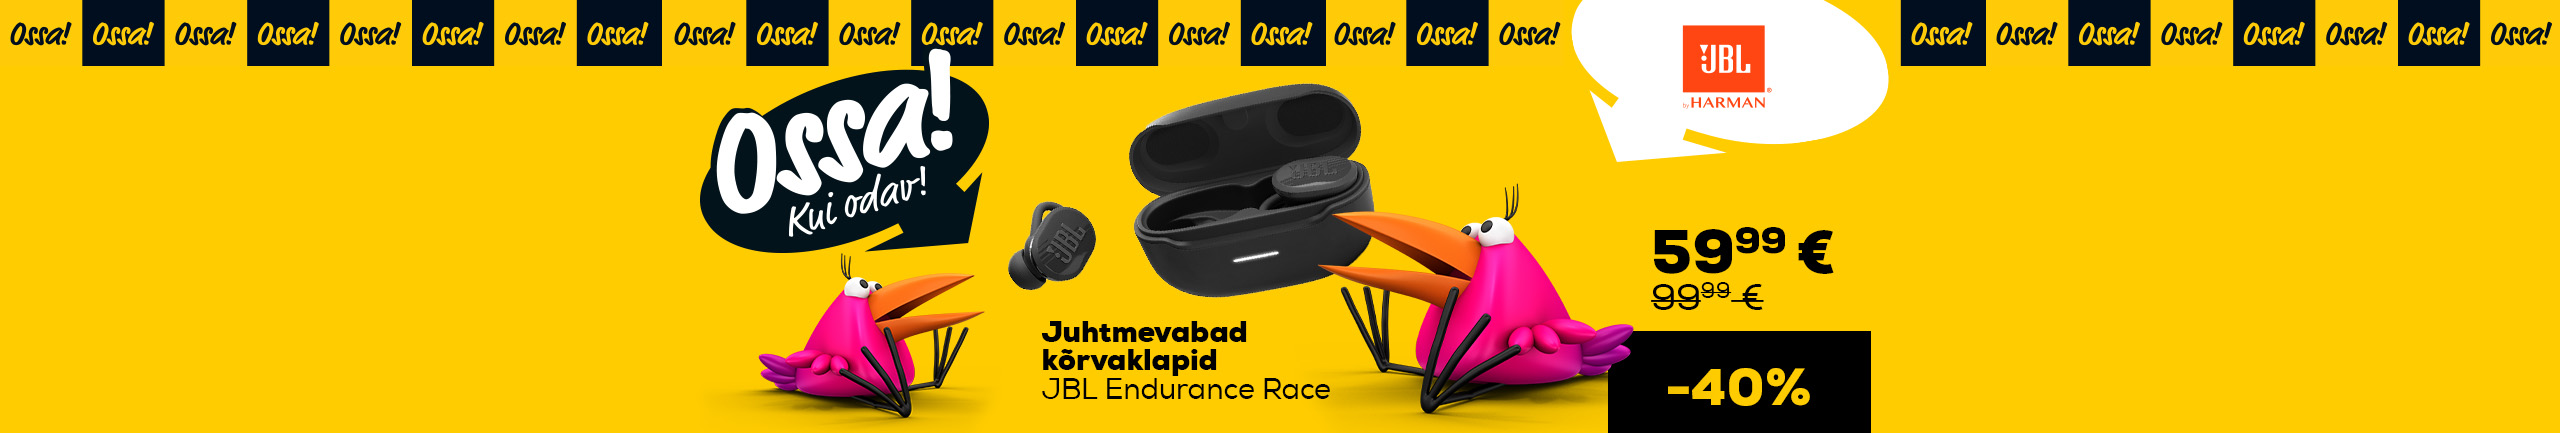 Ossa! Summer 2022. Wireless earbuds JBL Endurance Race